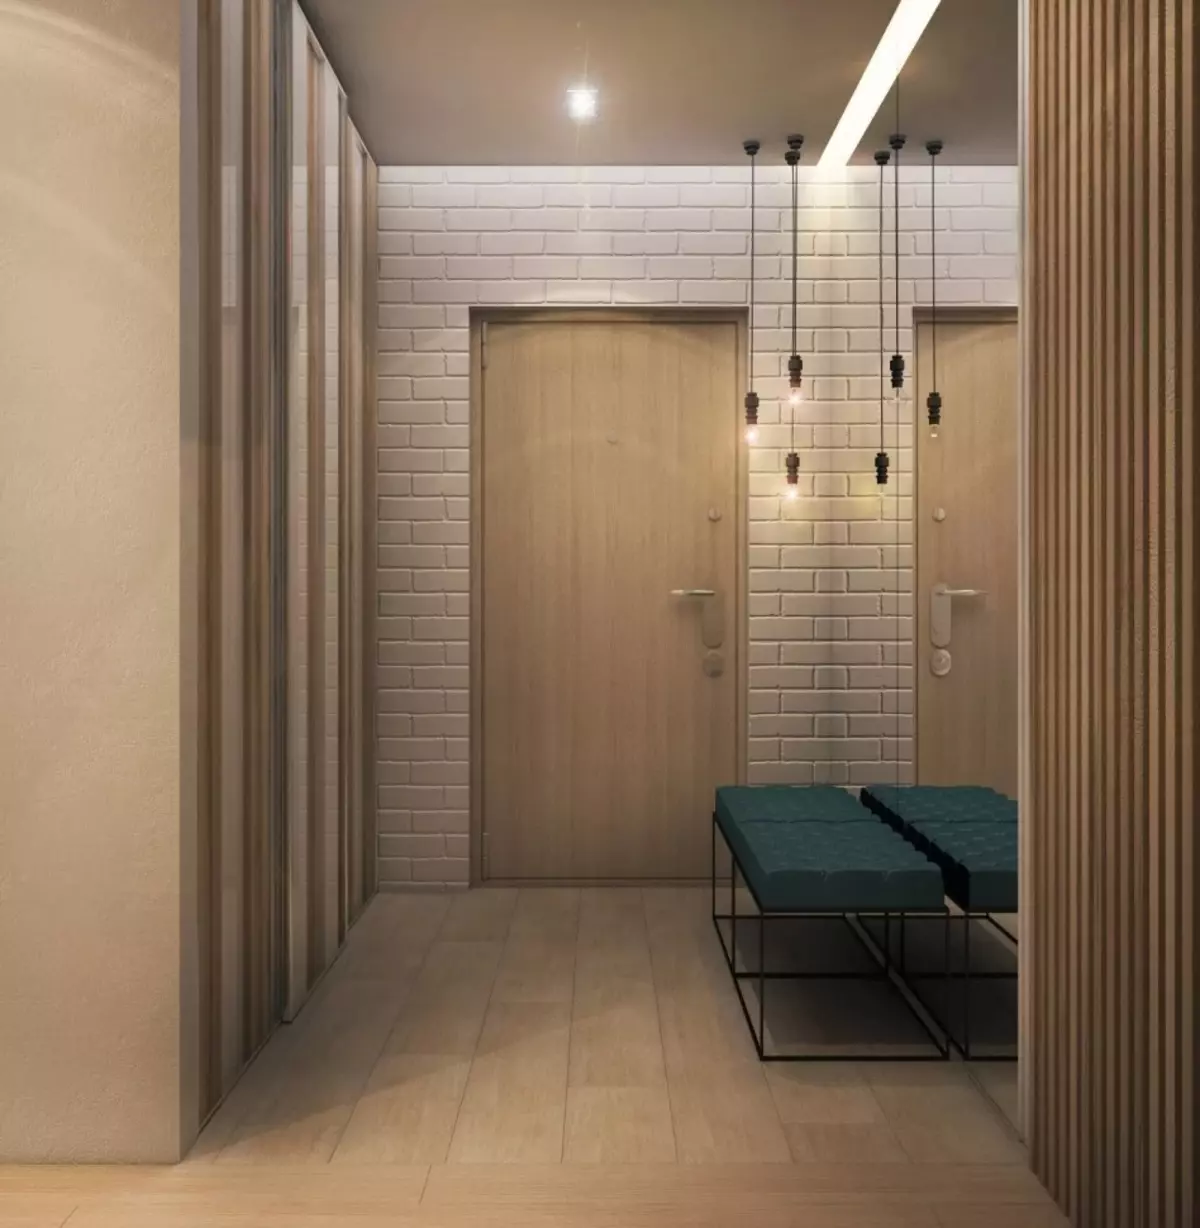 Hall d'entrée dans le style loft (76 photos): cintre et meubles à l'intérieur d'un petit couloir, un design de couloir avec un mur de briques, choisissez un banc et des armoires 9088_54